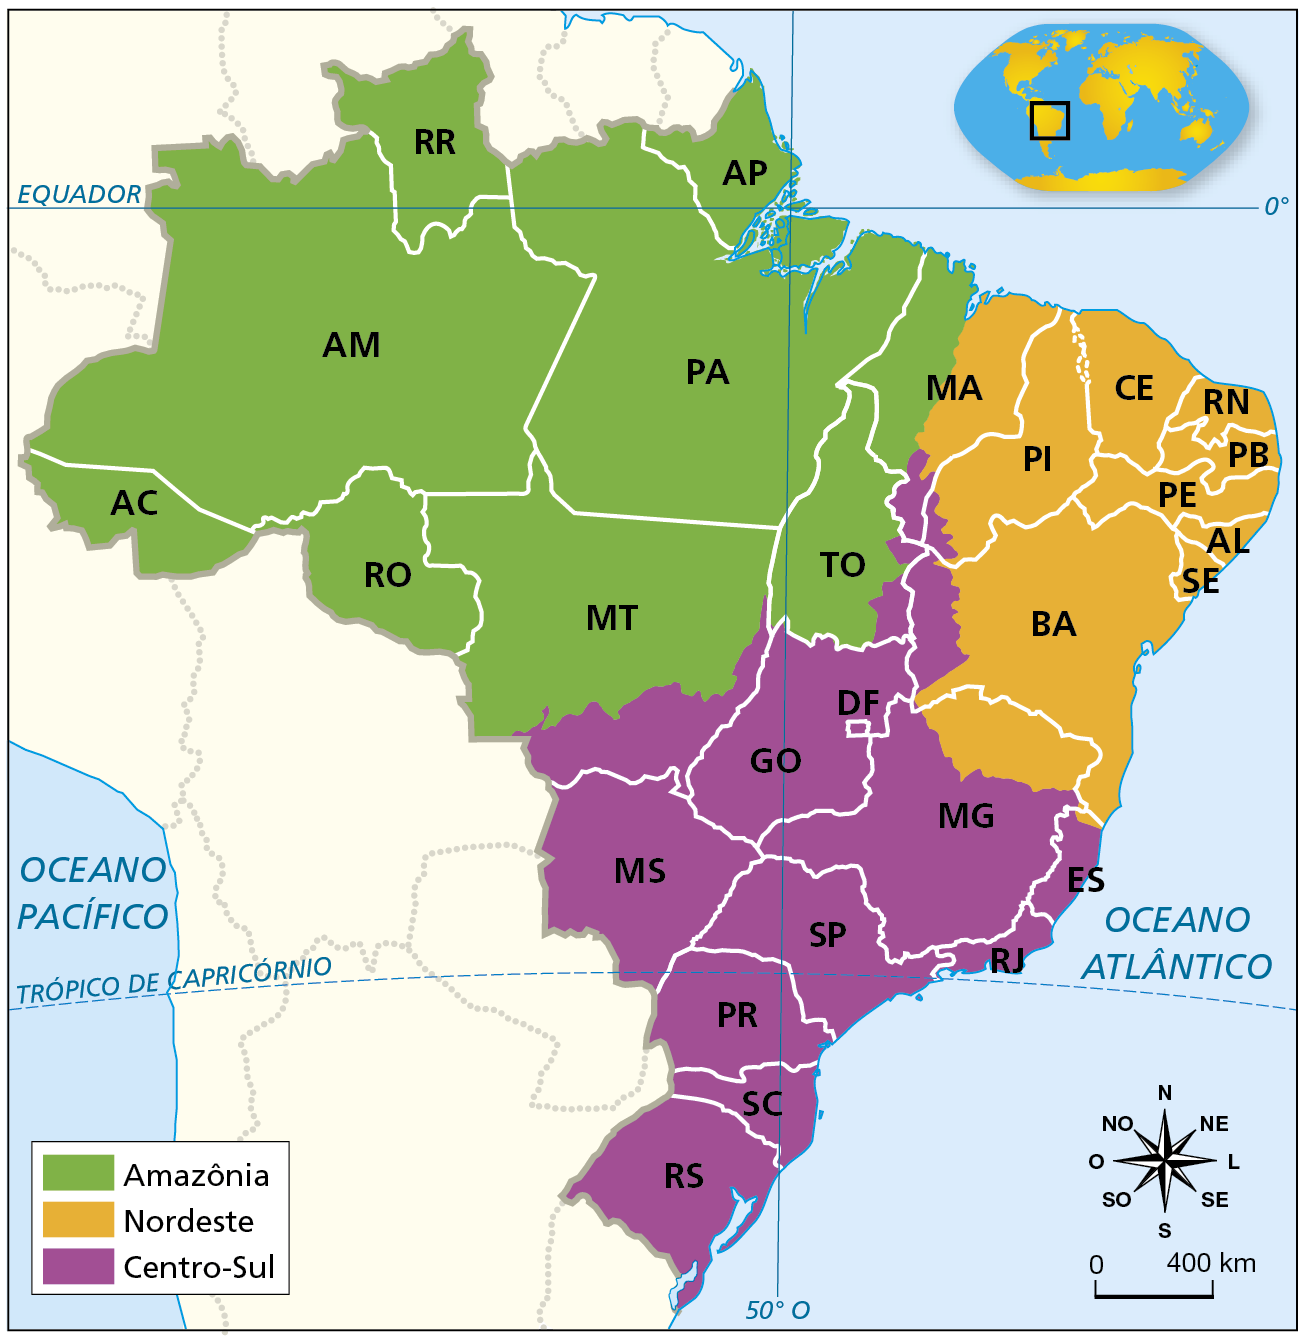 Mapa. Brasil: complexos regionais. Mapa do Brasil mostrando as regiões que formam os complexos regionais, diferenciados por cores. Amazônia (verde): todo o território da região norte (com exceção do sudeste do Tocantins), Mato Grosso (com exceção da porção sul), oeste do Maranhão. Nordeste (laranja): Piauí, Pernambuco, Sergipe, Alagoas, Paraíba, Rio Grande do Norte, Piauí (com exceção de um pequeno trecho do sudoeste), Bahia (com exceção da porção oeste), leste do Maranhão, norte de Minas Gerais. Centro-Sul (roxo): Rio Grande do Sul, Santa Catarina, Paraná, São Paulo, Rio de Janeiro, Espírito Santo, Minas Gerais (com exceção da porção norte), Goiás, Distrito Federal, Mato Grosso do Sul, sul do Mato Grosso, sudeste do Tocantins, oeste da Bahia, sudoeste do Piauí, sul do Maranhão. Abaixo, rosa dos ventos e escala 0 a 400 quilômetros.